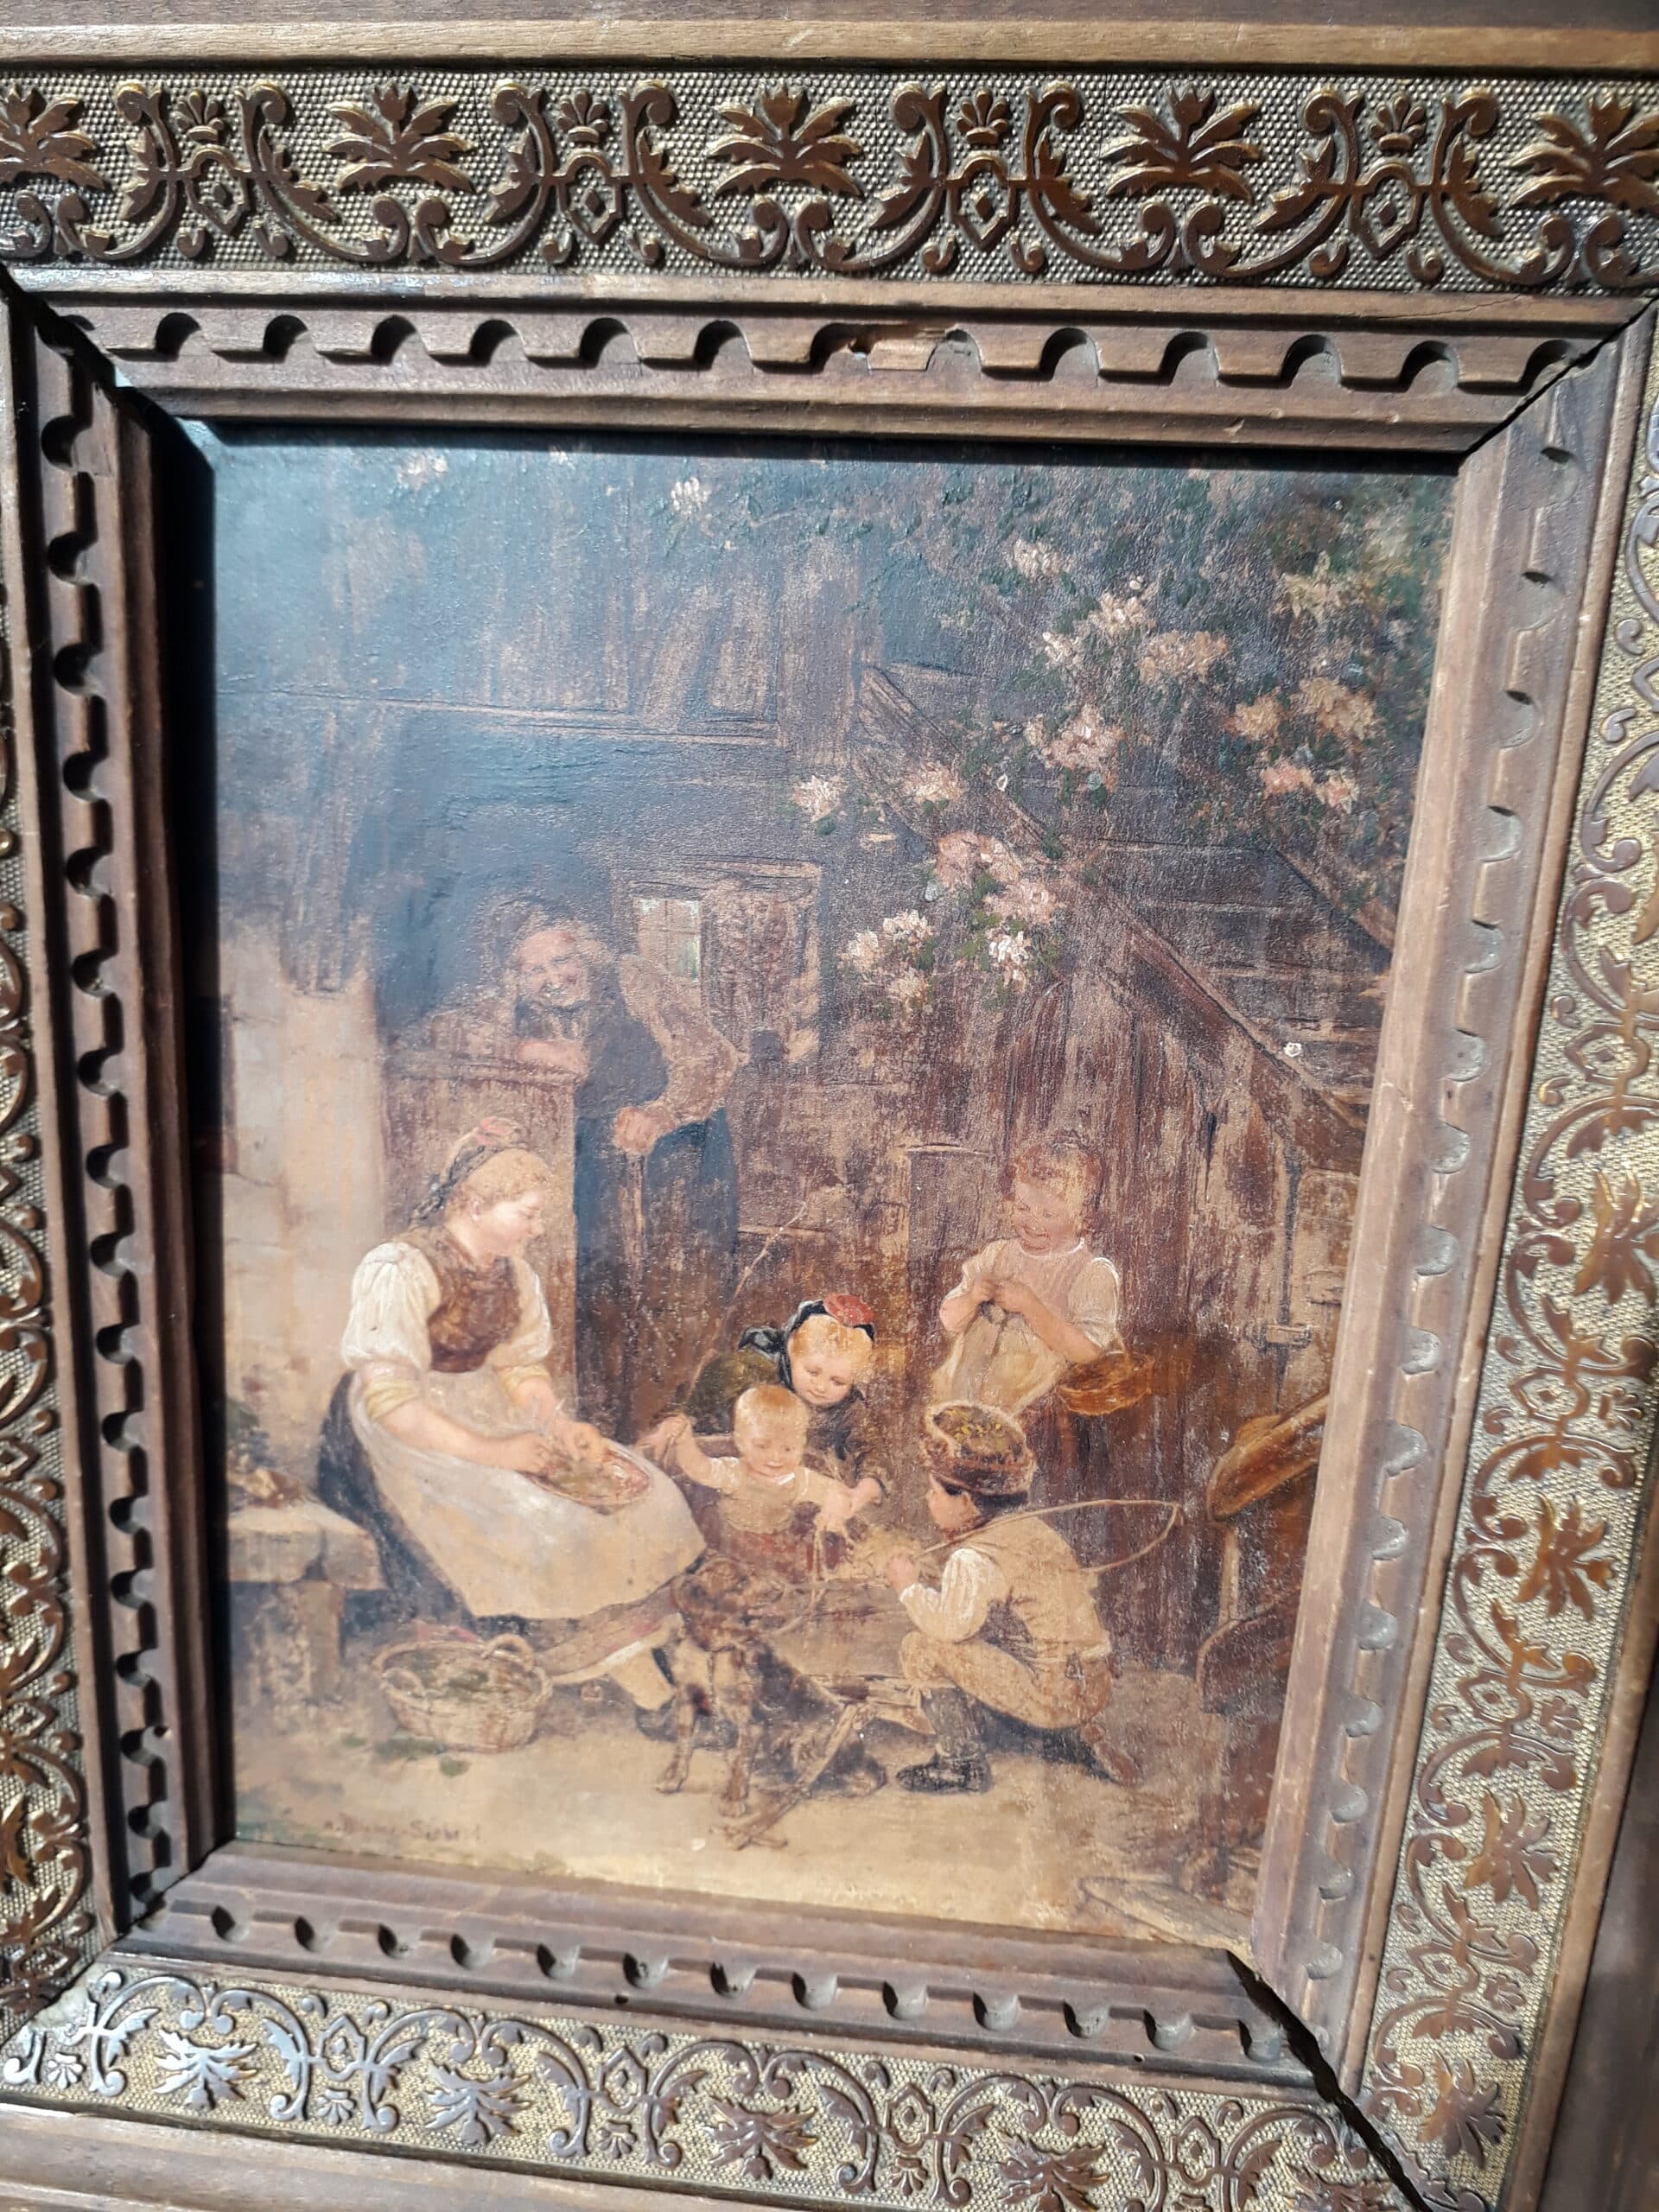 : Peintre Blume-Siebert, sujet 4 enfants et 2 femmes à l’intérieur, support bois, création fin 19eme ou début 20eme